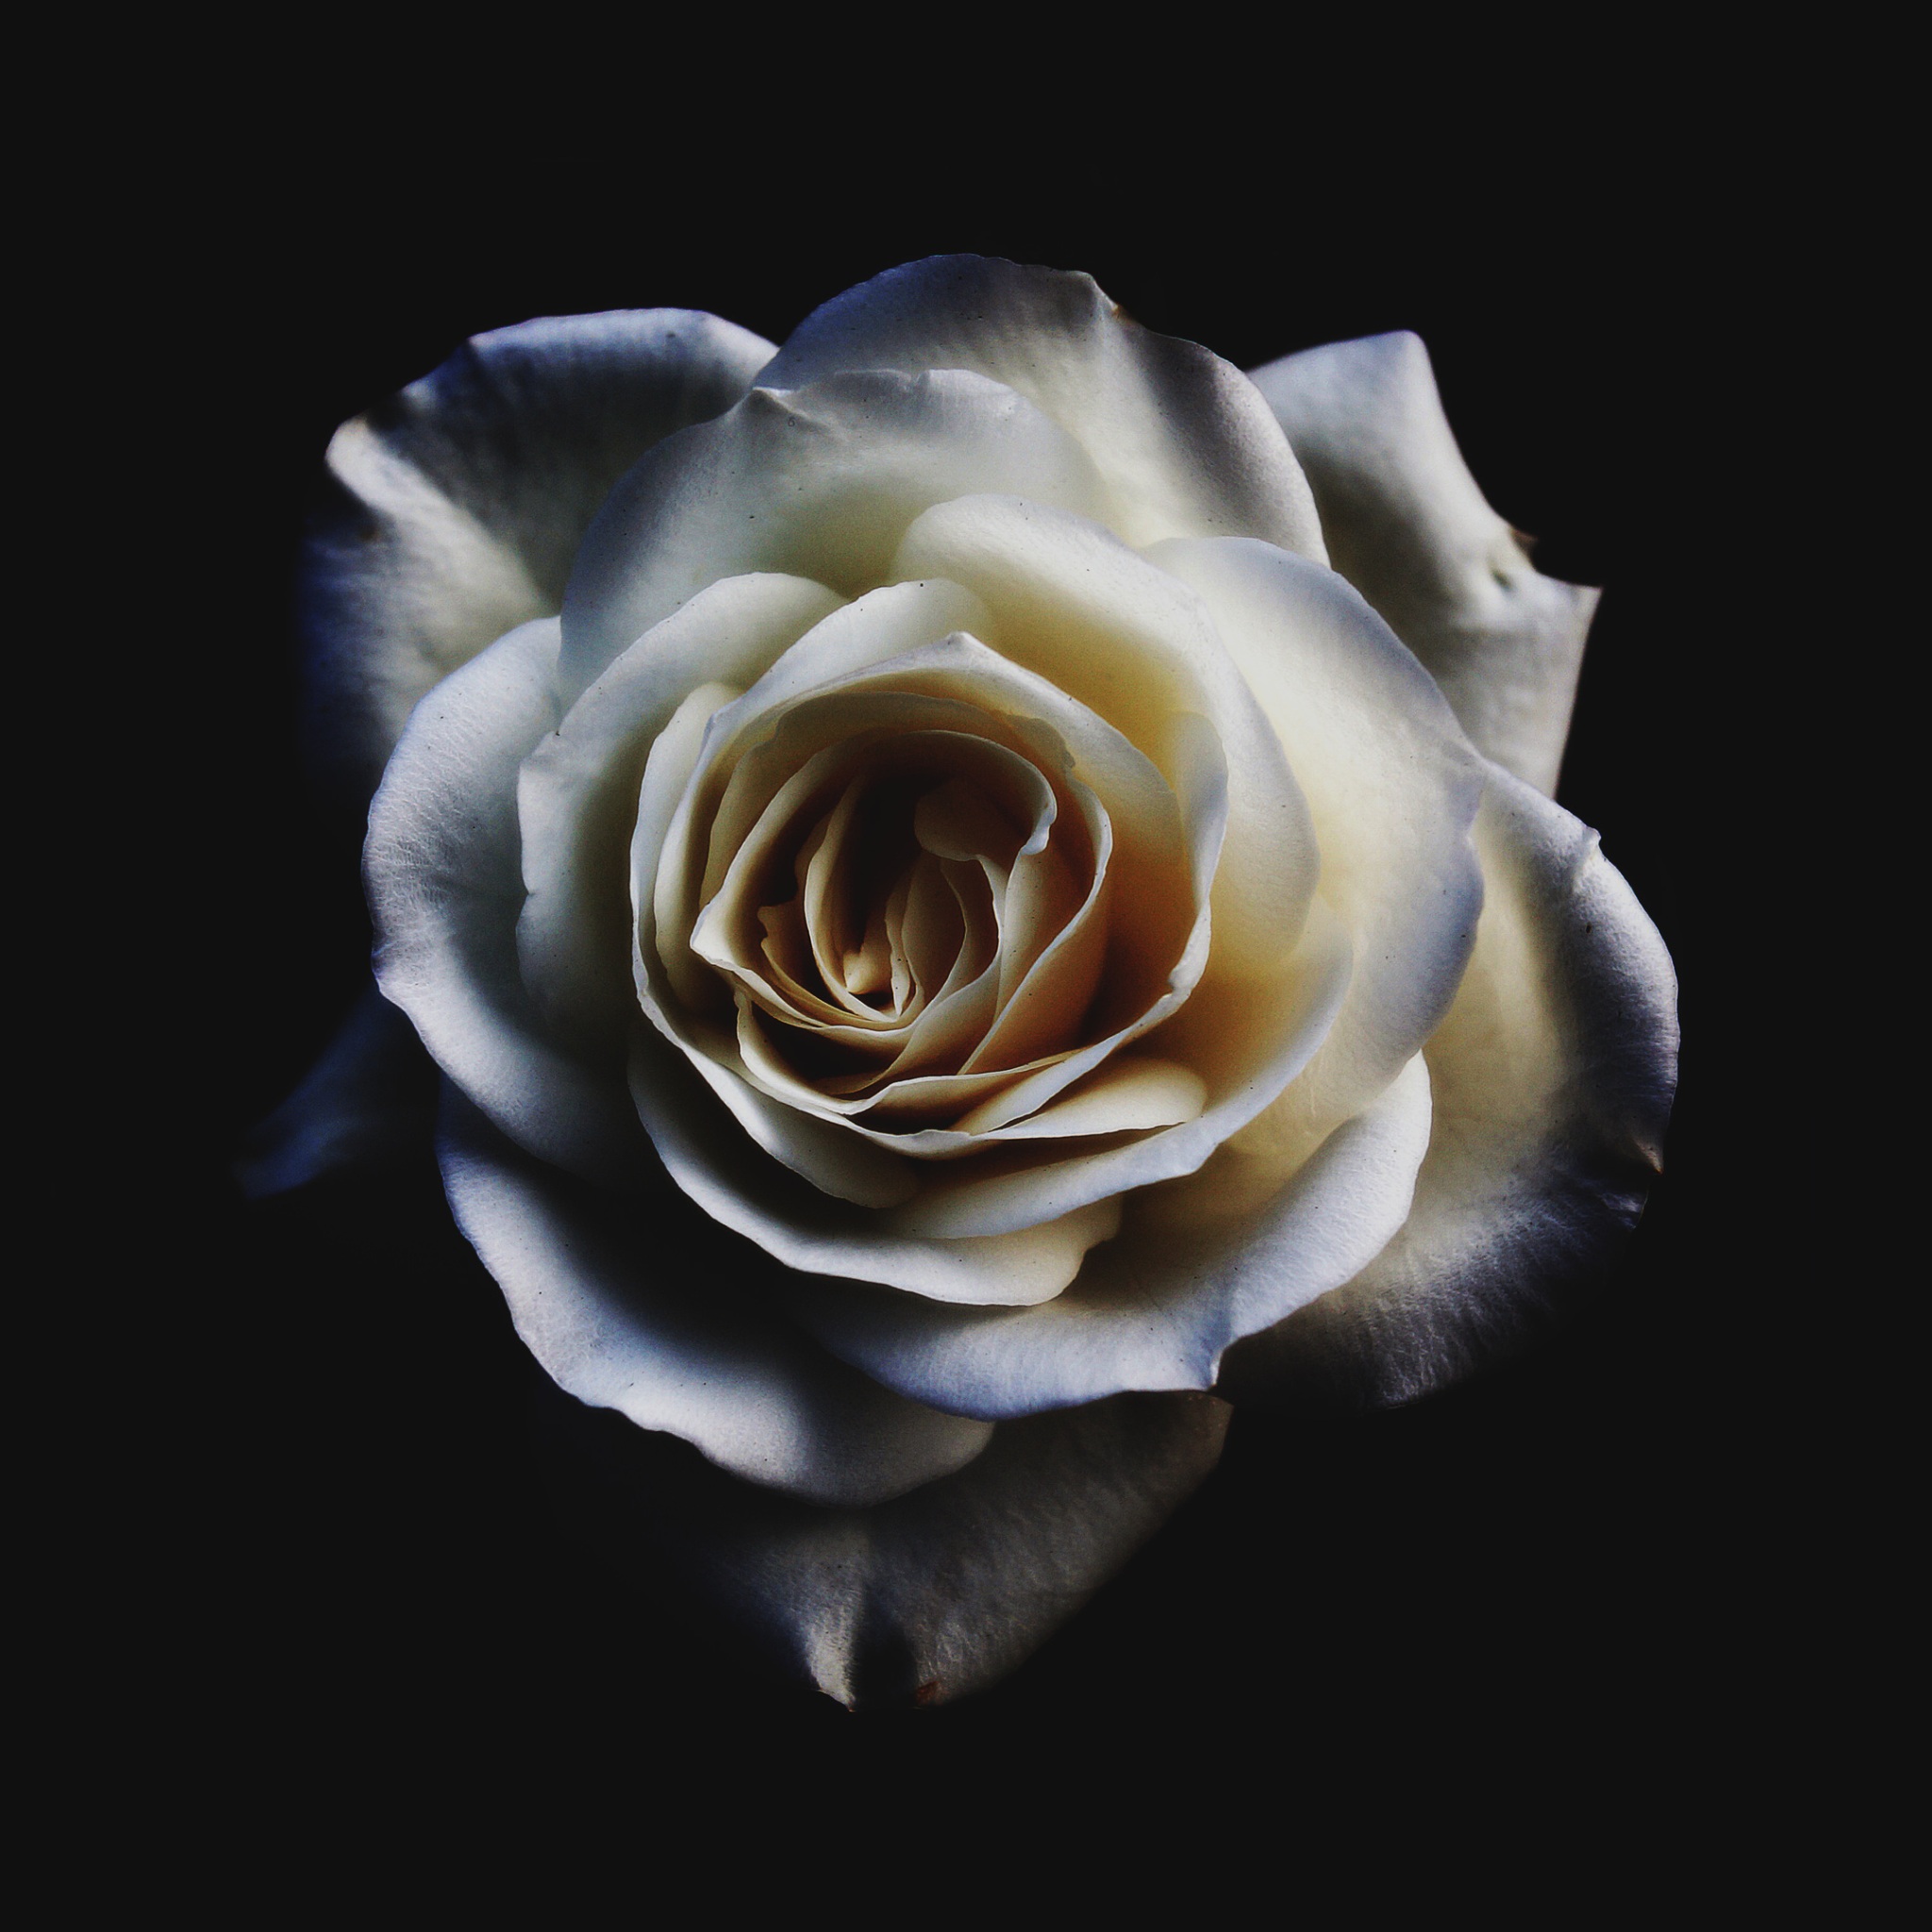 Hoa hồng trắng - Tận hưởng vẻ đẹp đơn giản, tinh tế và thanh khiết của hoa hồng trắng, mang đến cho bạn sự bình yên và thăng hoa trong tinh thần. Hãy chiêm ngưỡng những bức ảnh hoa hồng trắng lộng lẫy và cuốn hút này.